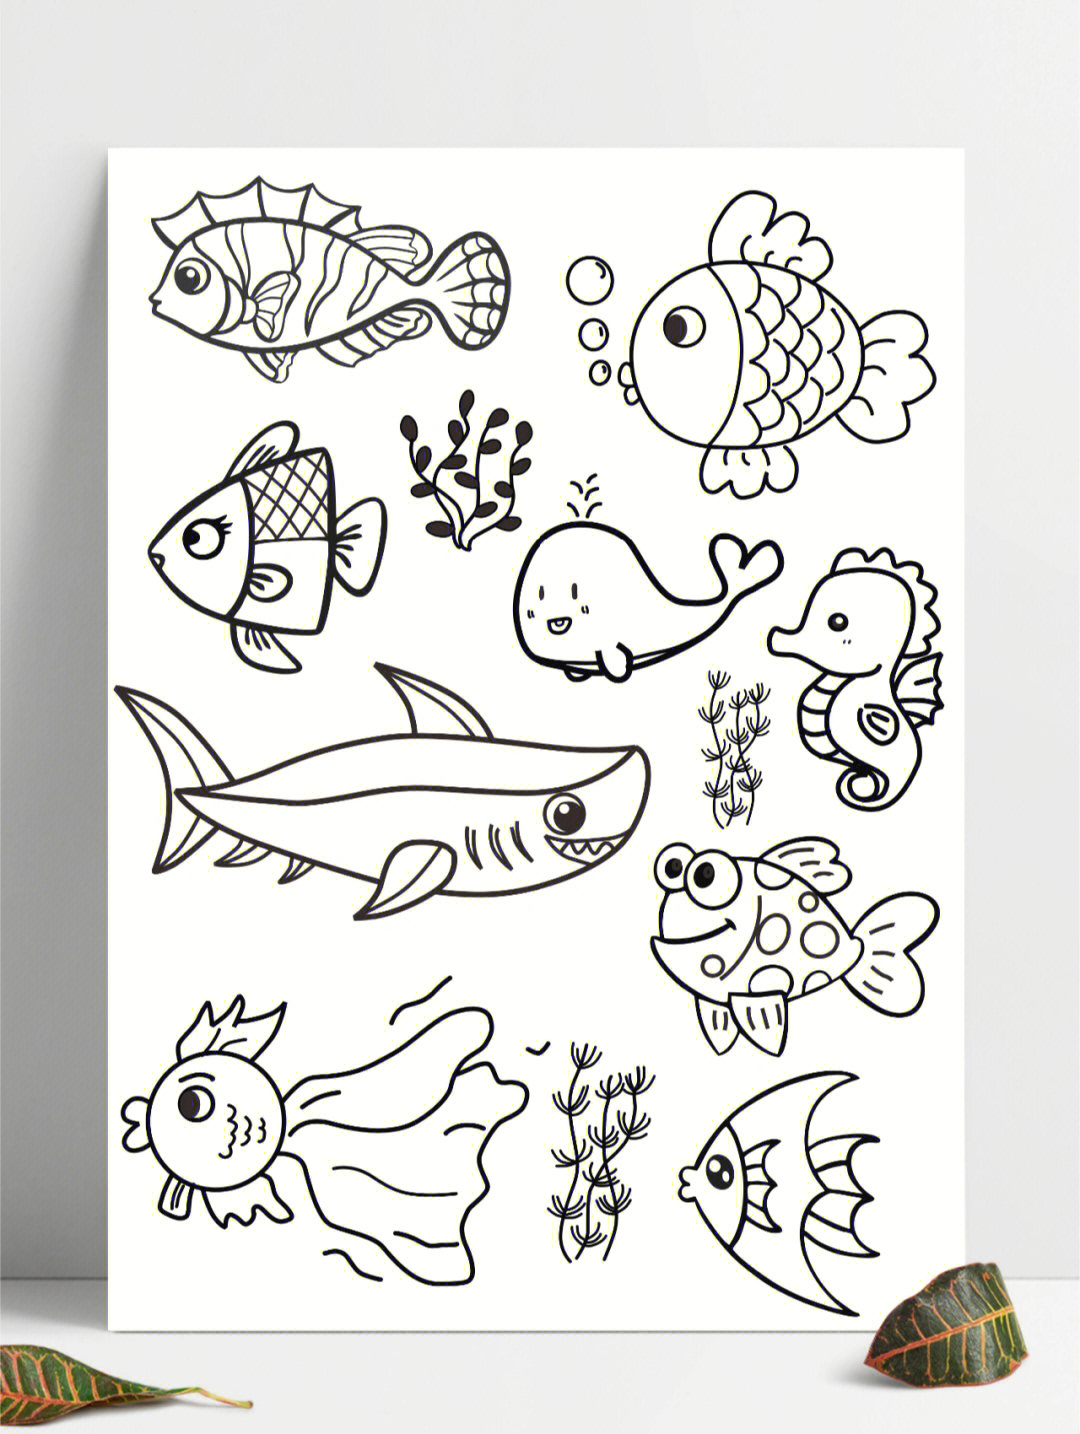 海洋鱼类 简笔画图片